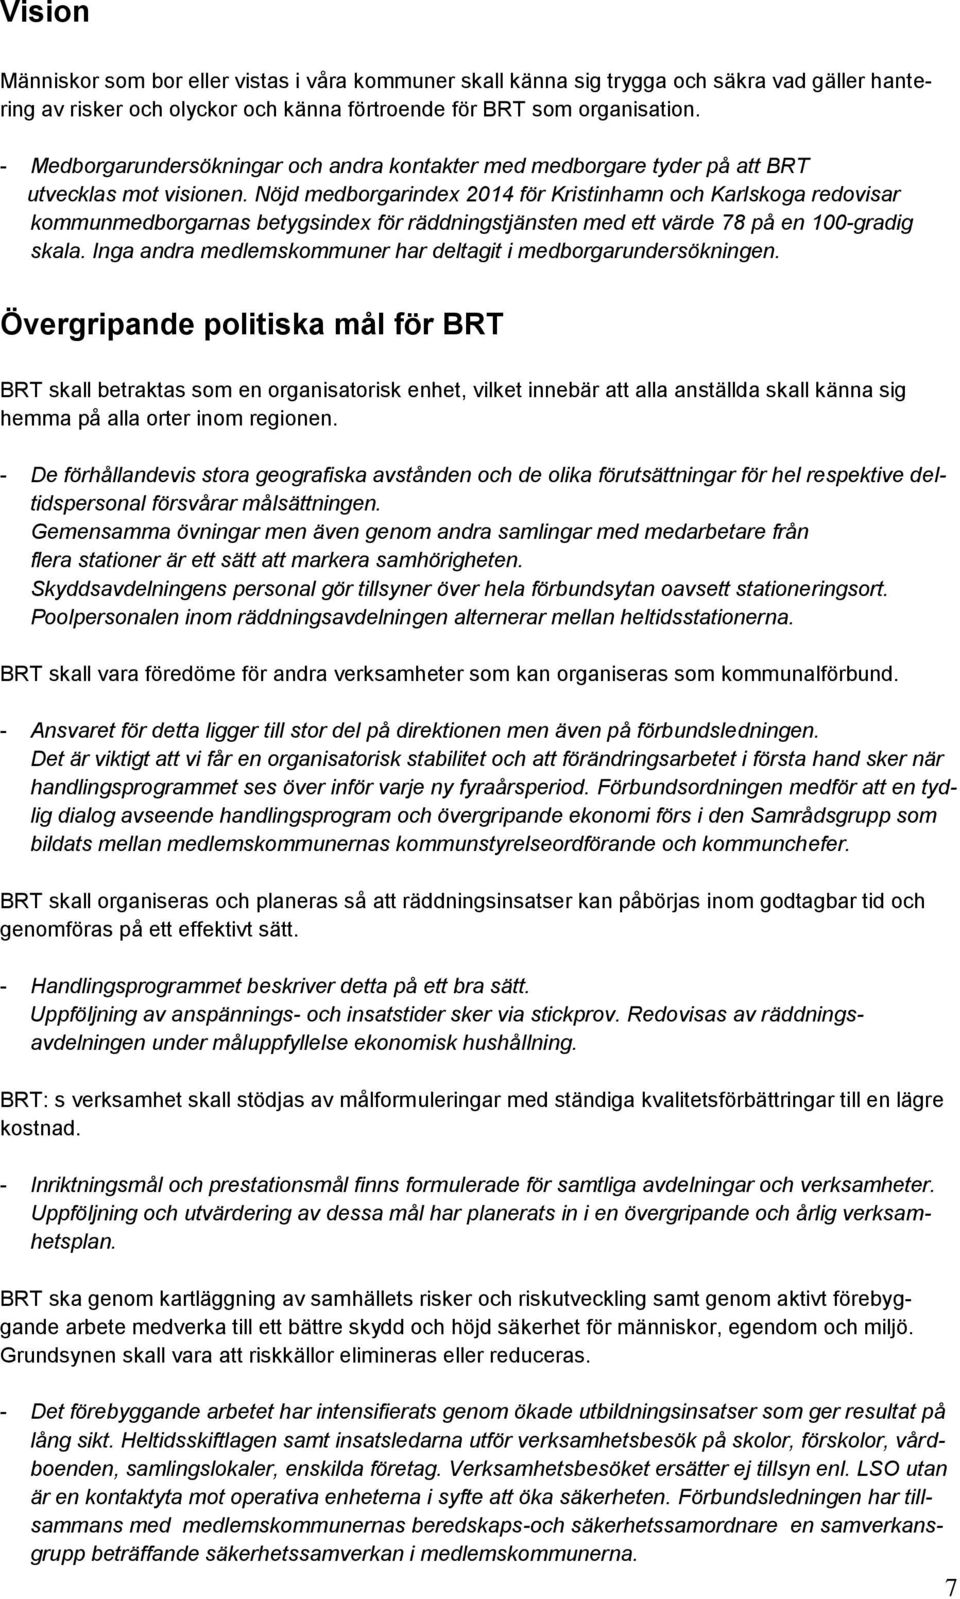 Nöjd medborgarindex 2014 för Kristinhamn och Karlskoga redovisar kommunmedborgarnas betygsindex för räddningstjänsten med ett värde 78 på en 100-gradig skala.